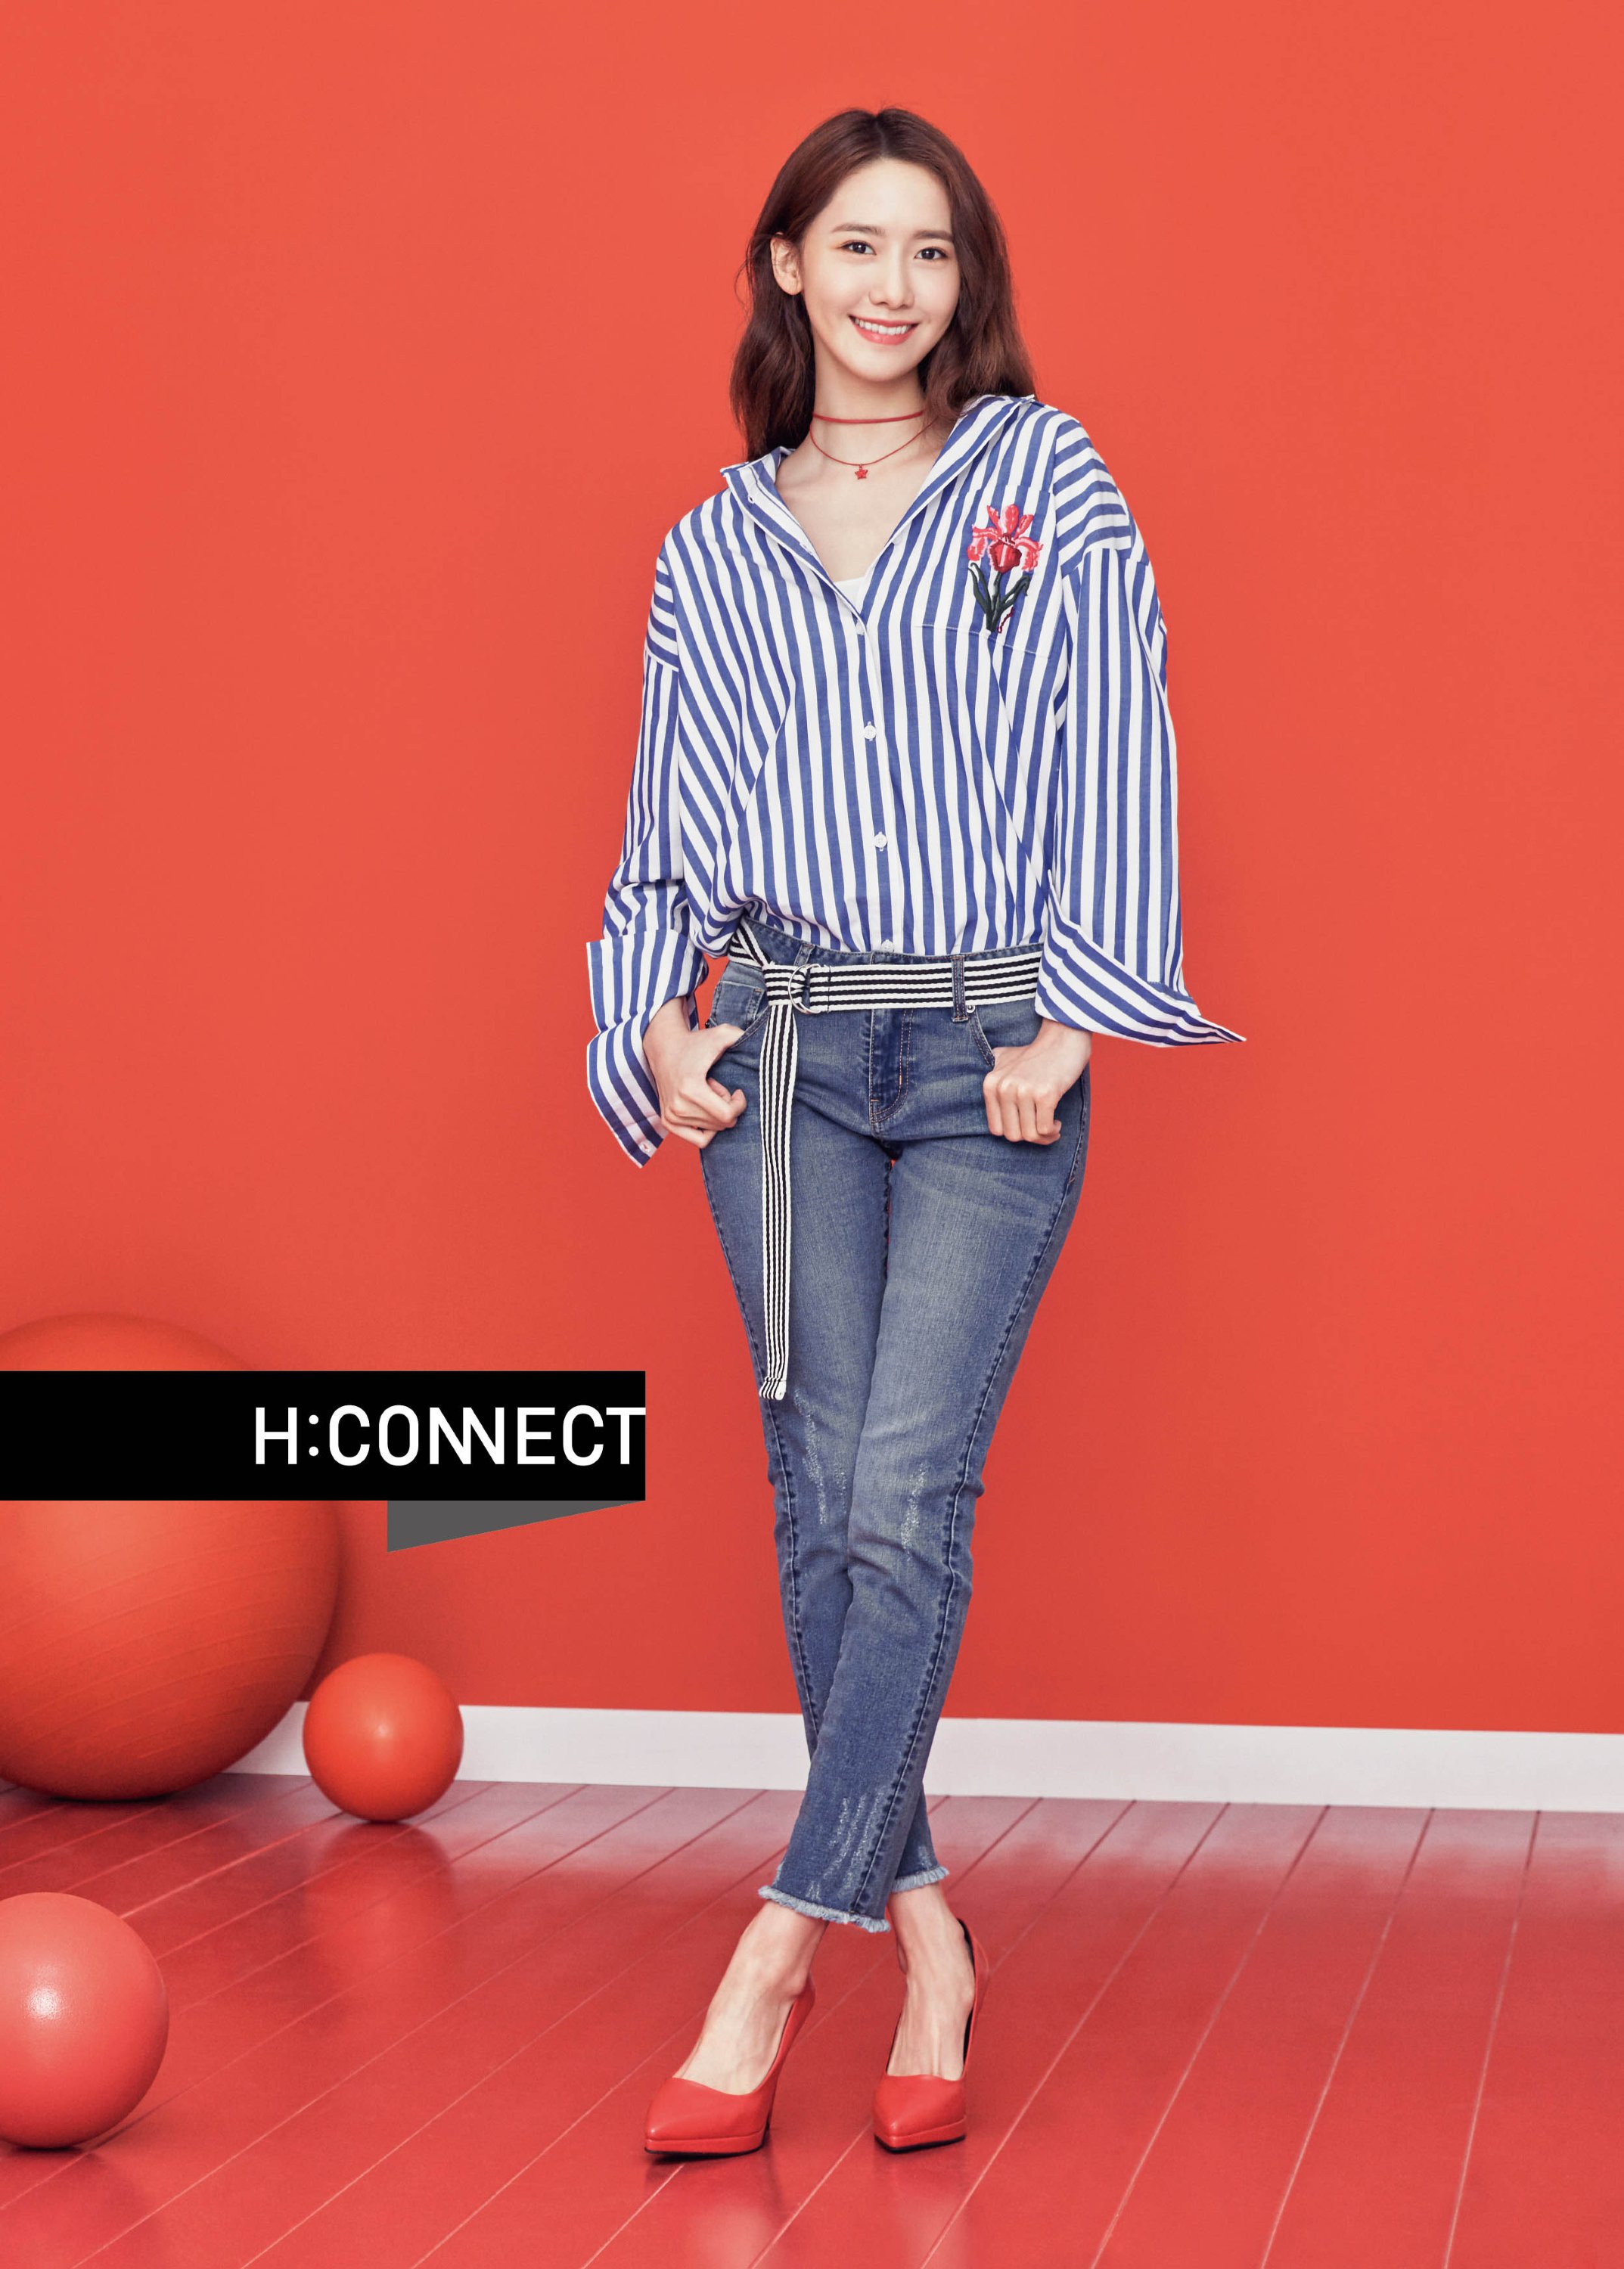 [OTHER][27-07-2015]YoonA trở thành người mẫu mới cho dòng thời trang "H:CONNECT" - Page 7 ZV_XR90dcY-3000x3000